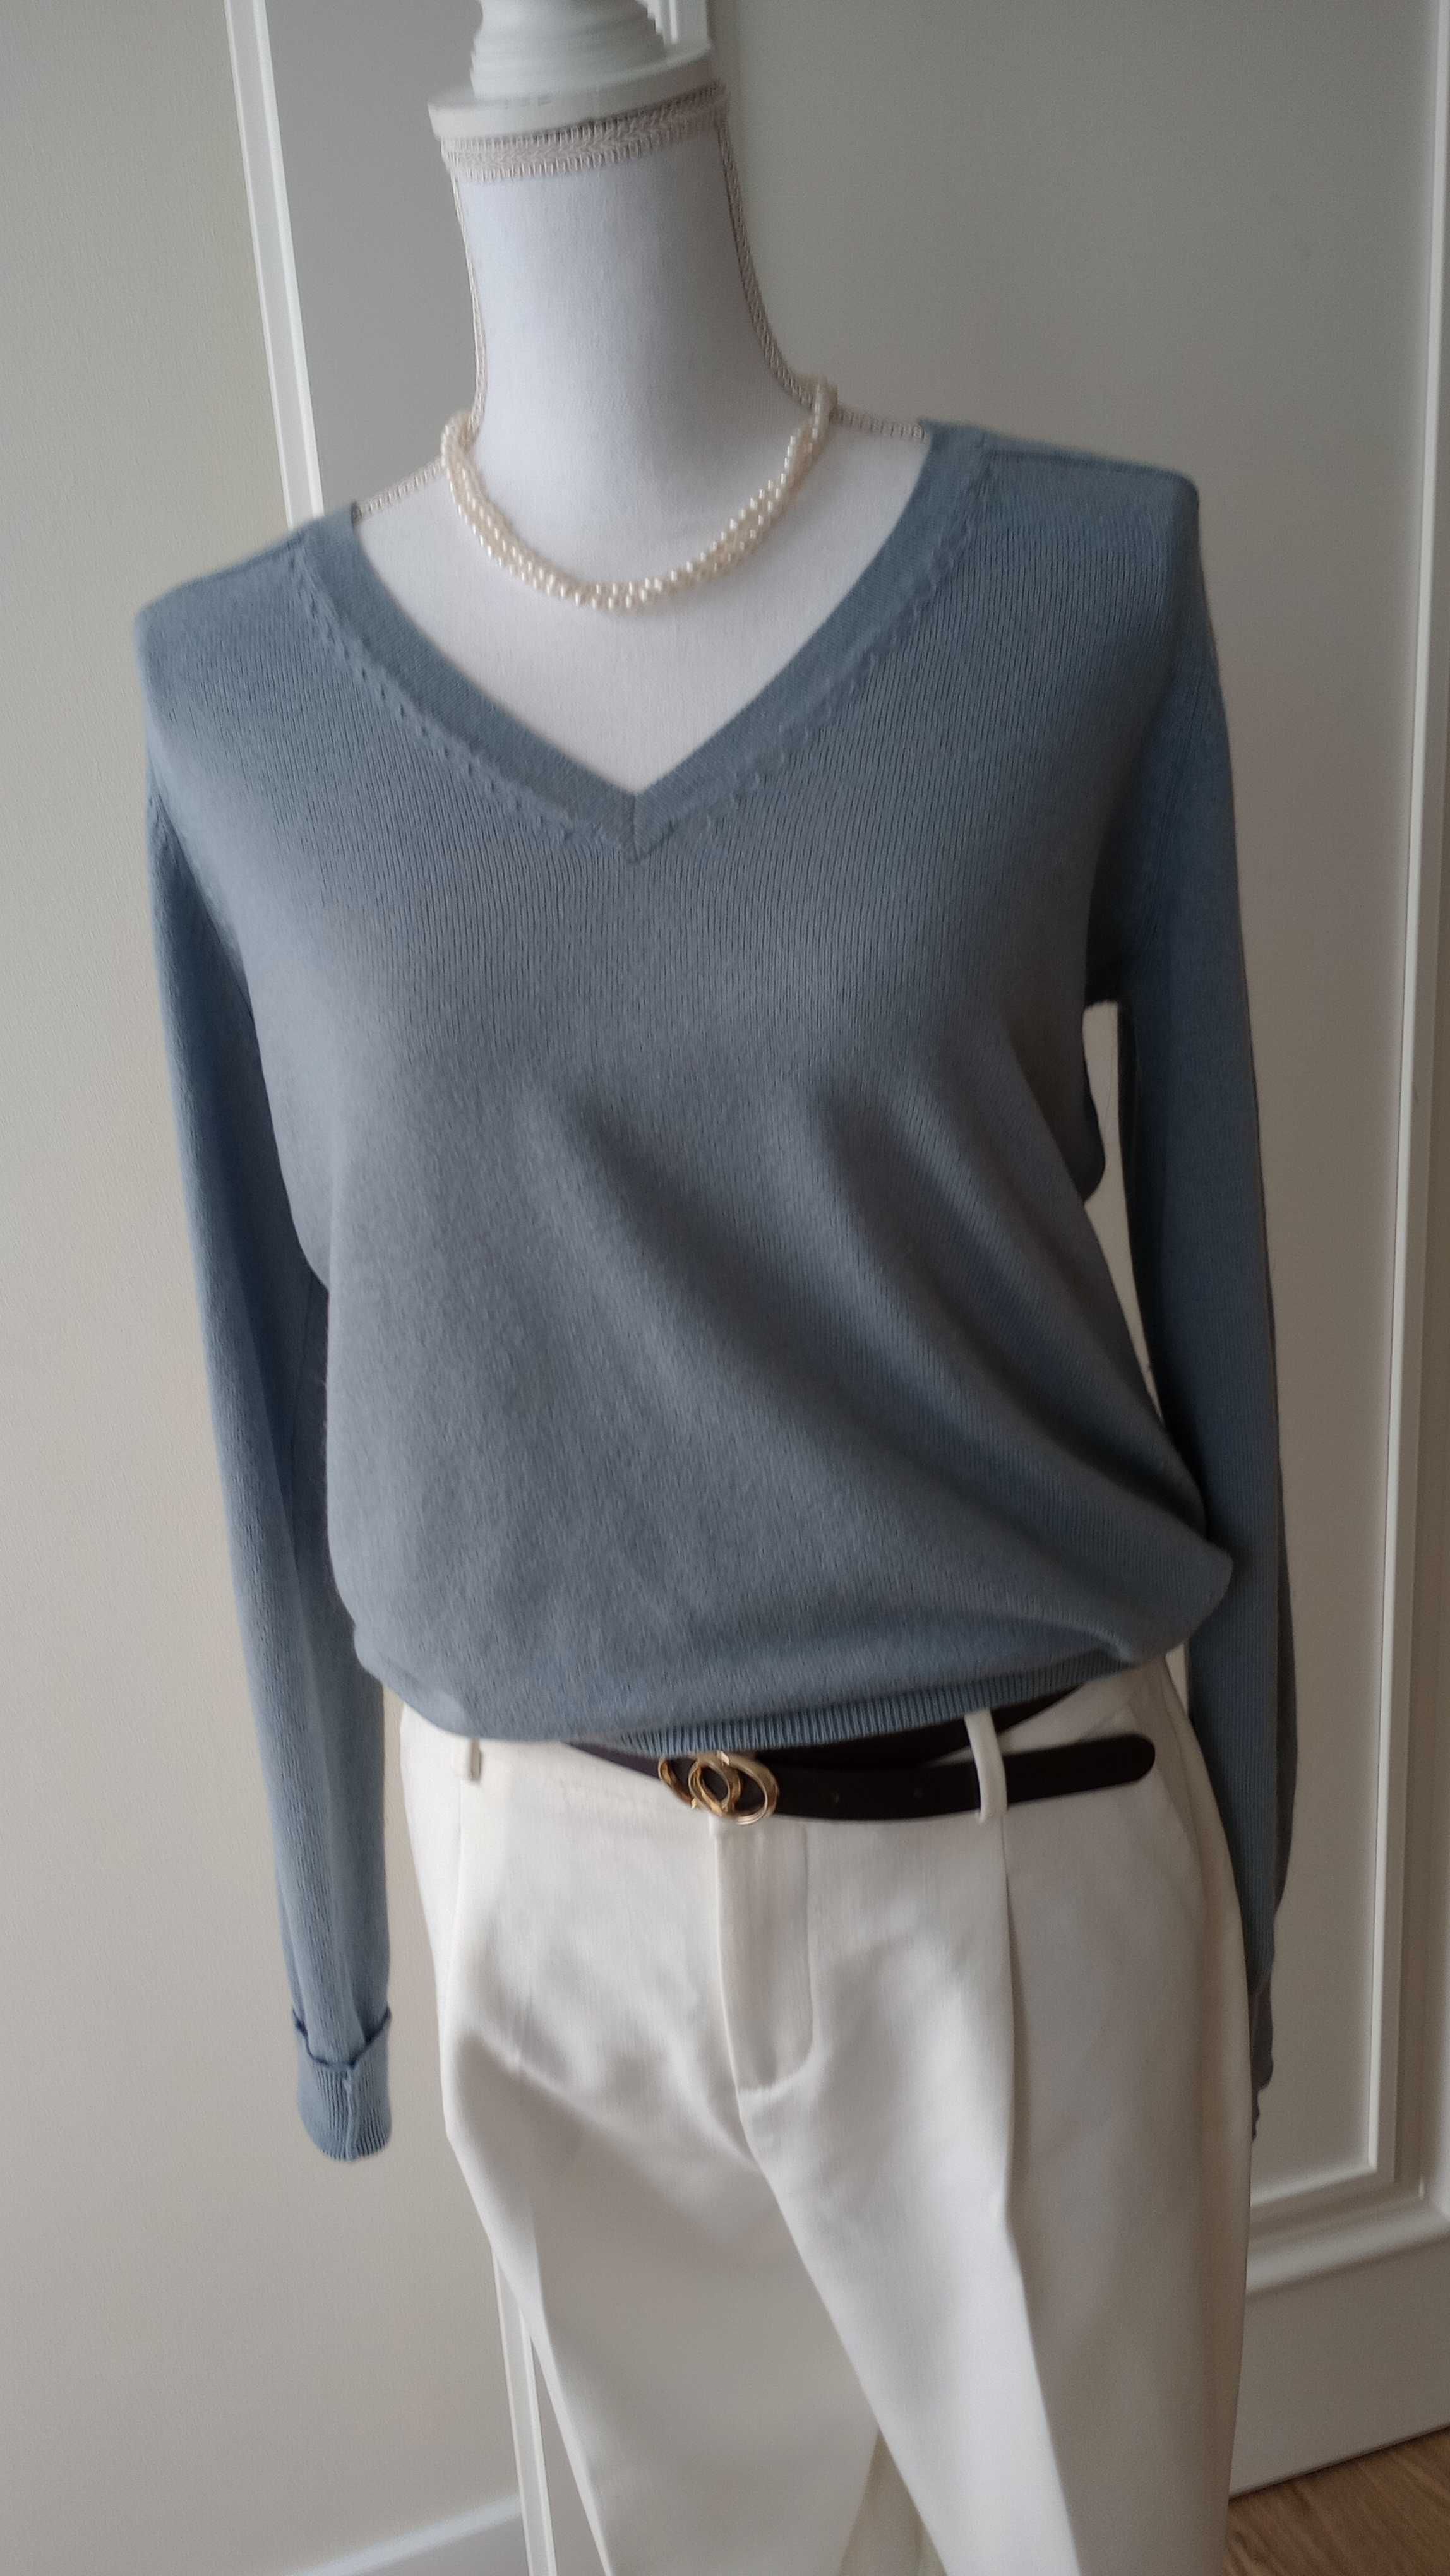 Sweter kaszmirowy, błękitny,rozmiar M